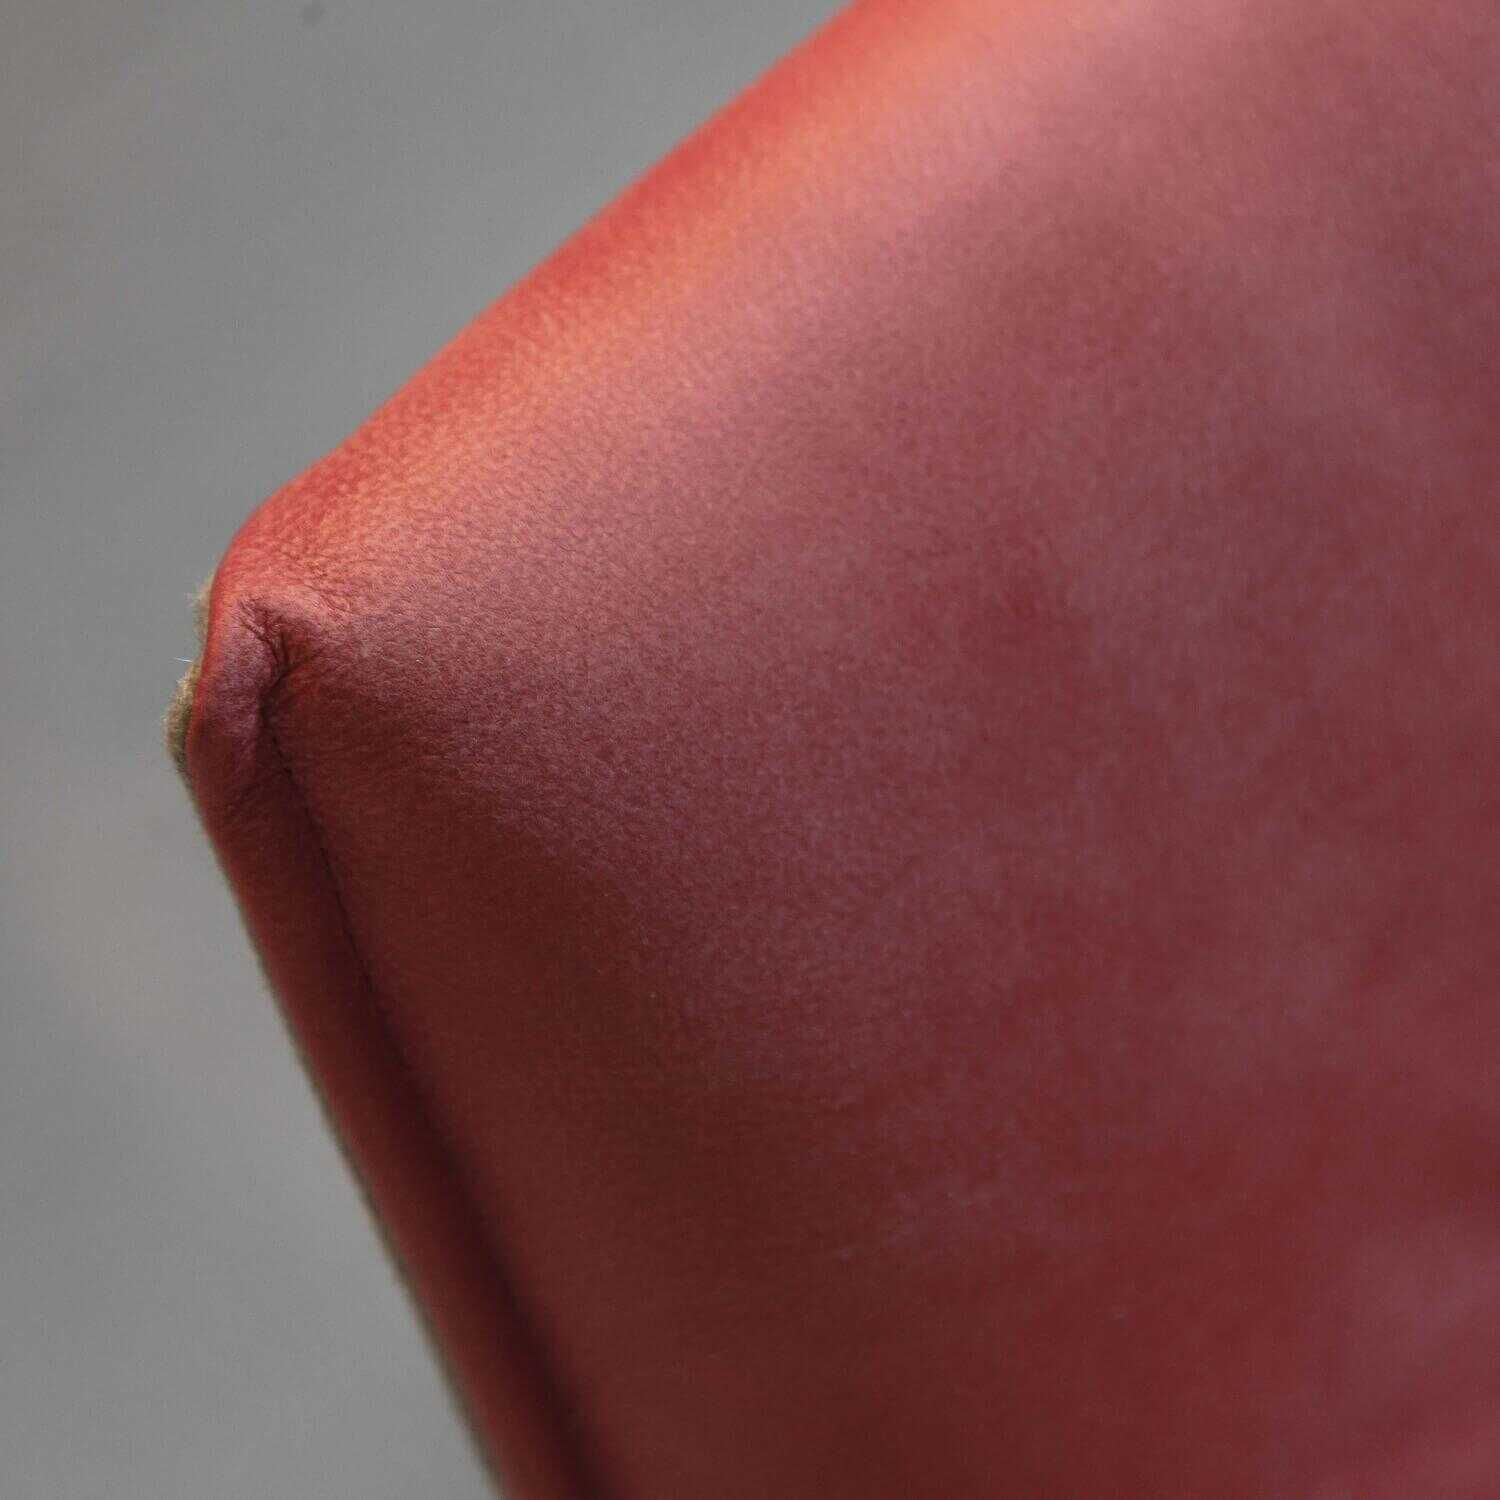 Stuhl Modell 1211 Leder A India Granate Rot ohne Armlehne